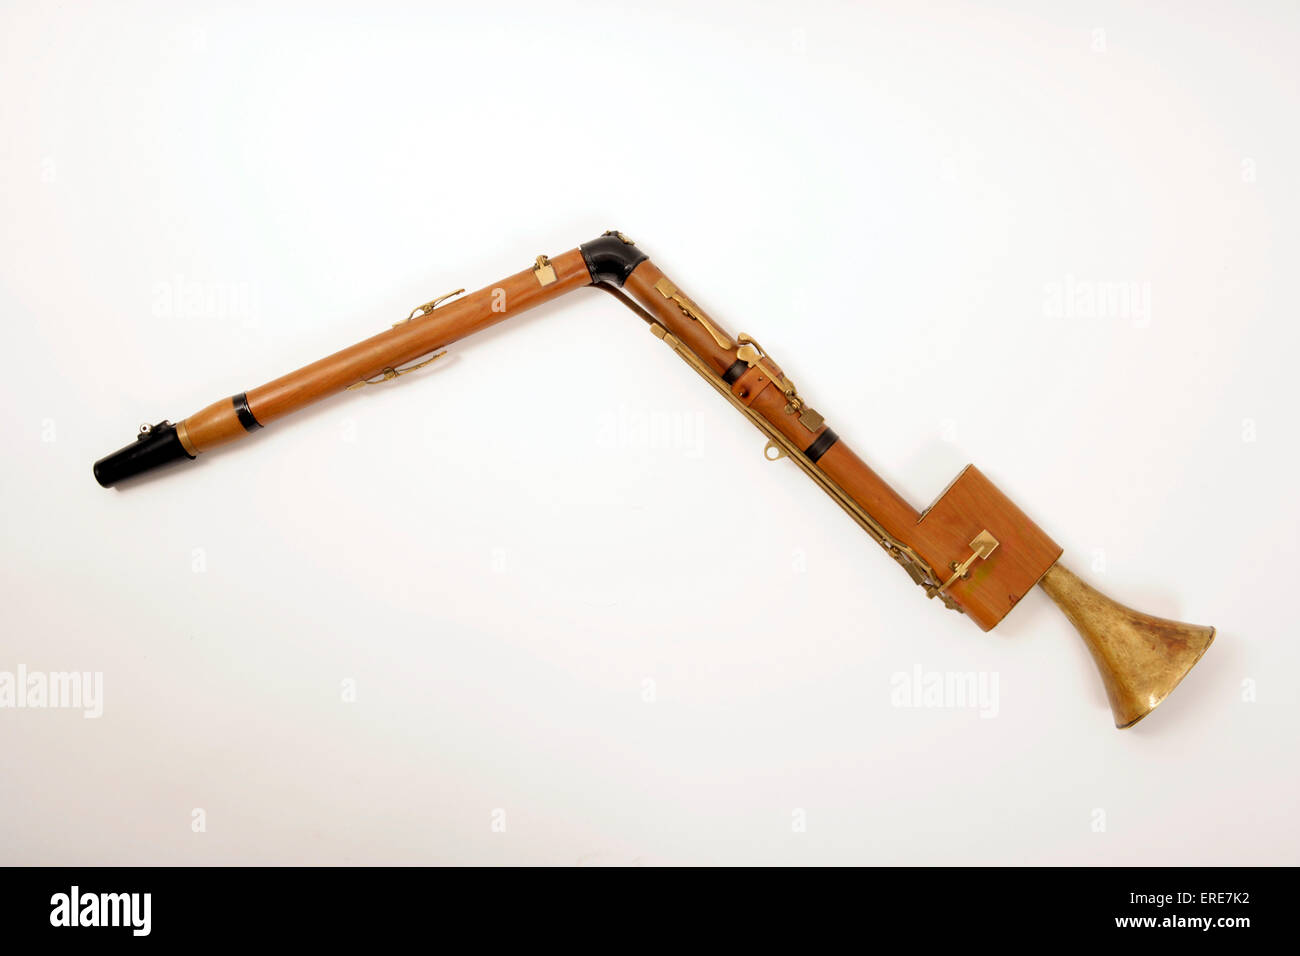 Basset Horn, de instrumentos de época de los años 1700, período clásico. Foto de stock